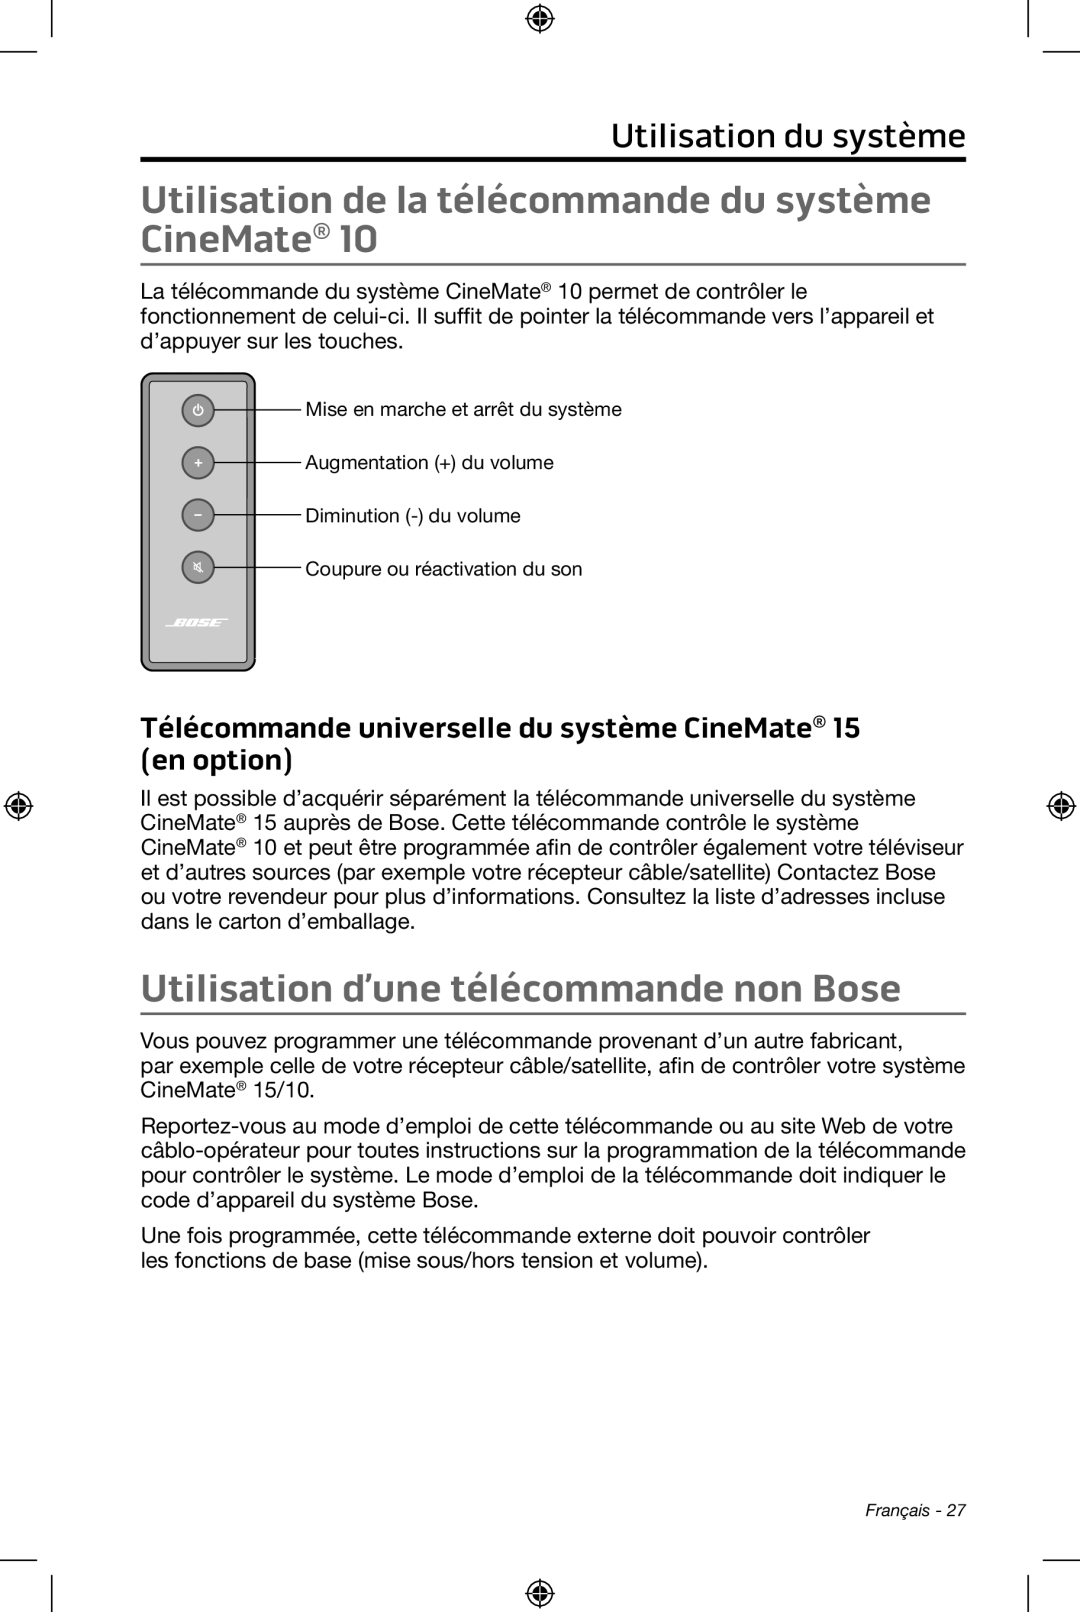 Bose CineMate 15/10 Utilisation d’une télécommande non Bose, Utilisation du système, Mise en marche et arrêt du système 